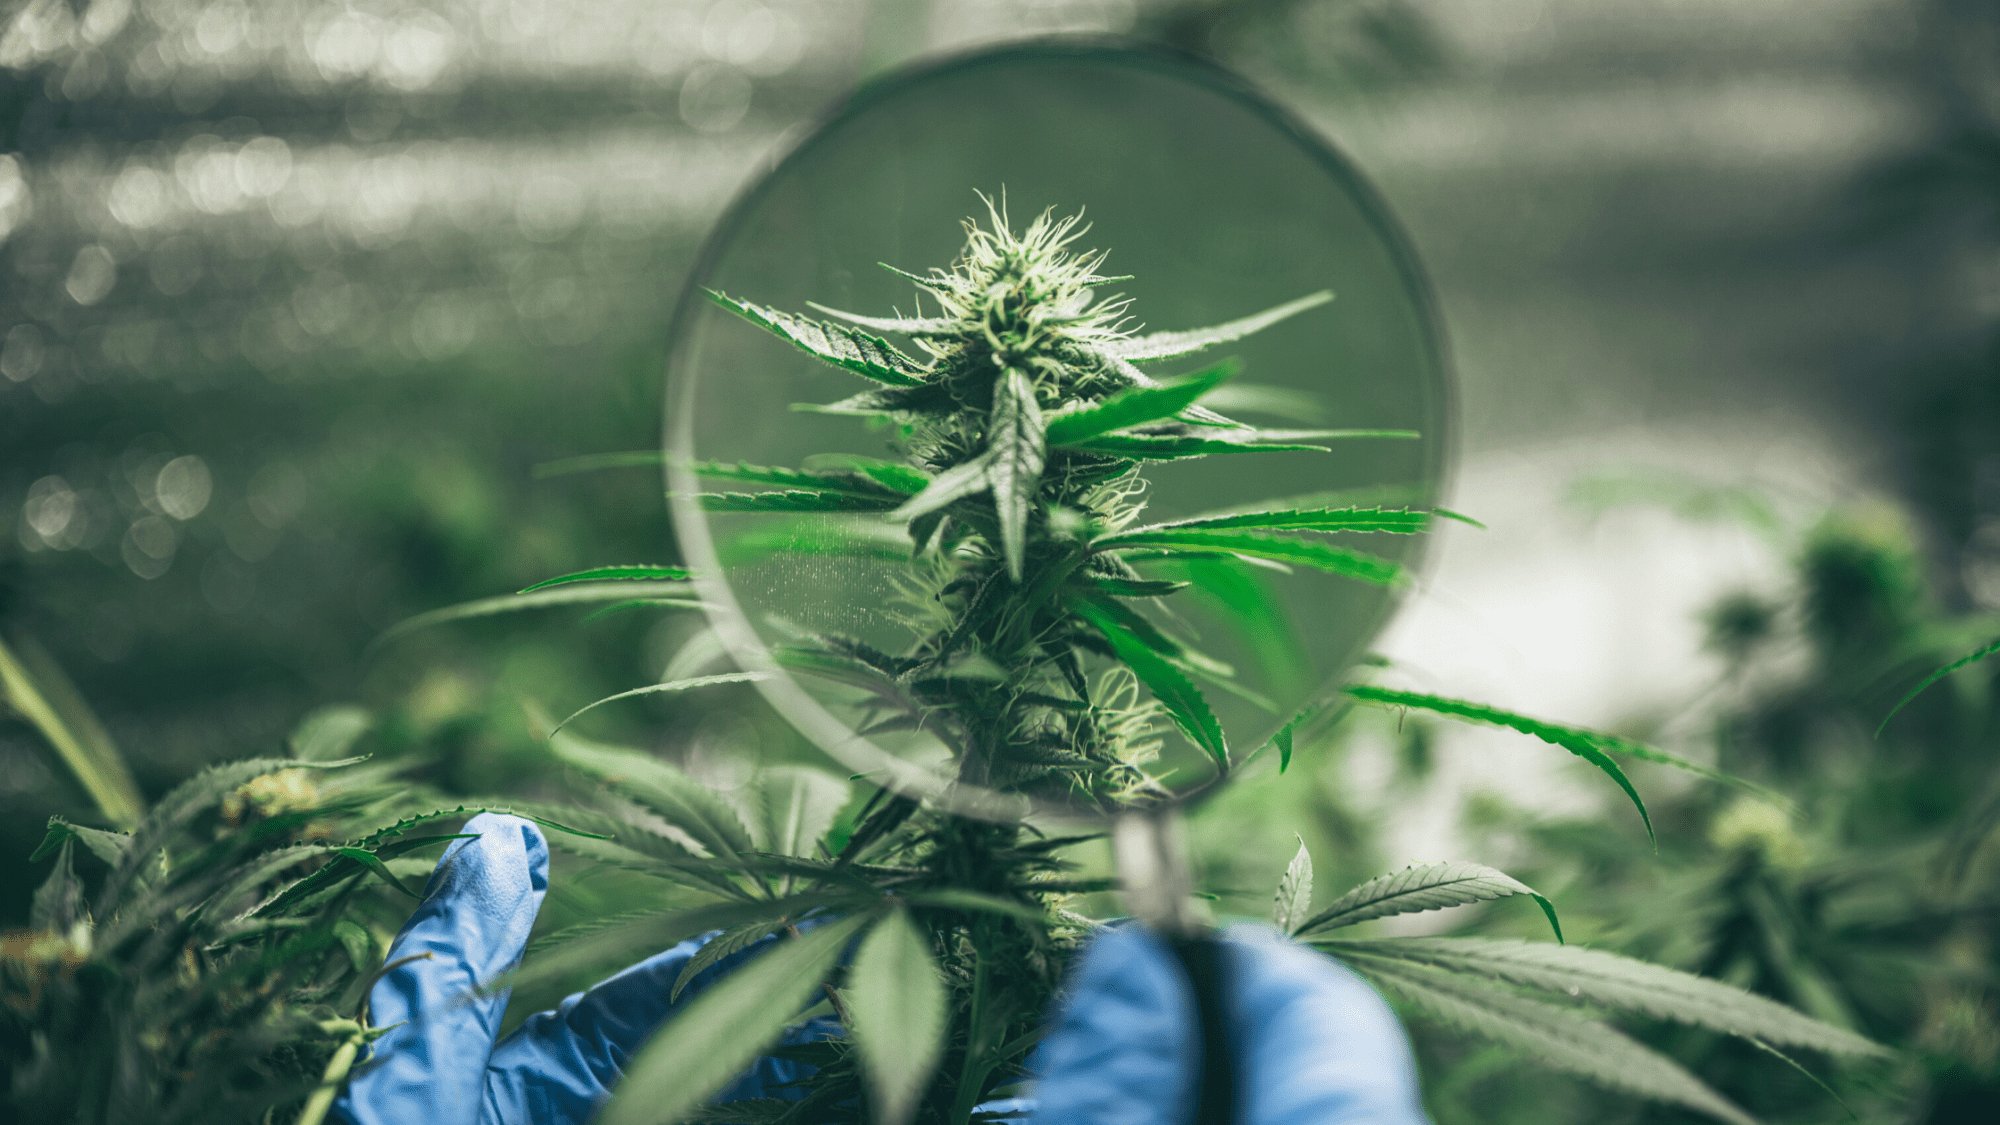 Andrew Wilson, un veterano de la industria del cannabis y CEO de GrowerIQ, recientemente publicó un artículo para la revista Rolling Stone que predice el desarrollo futuro de la industria del cannabis en 2023.